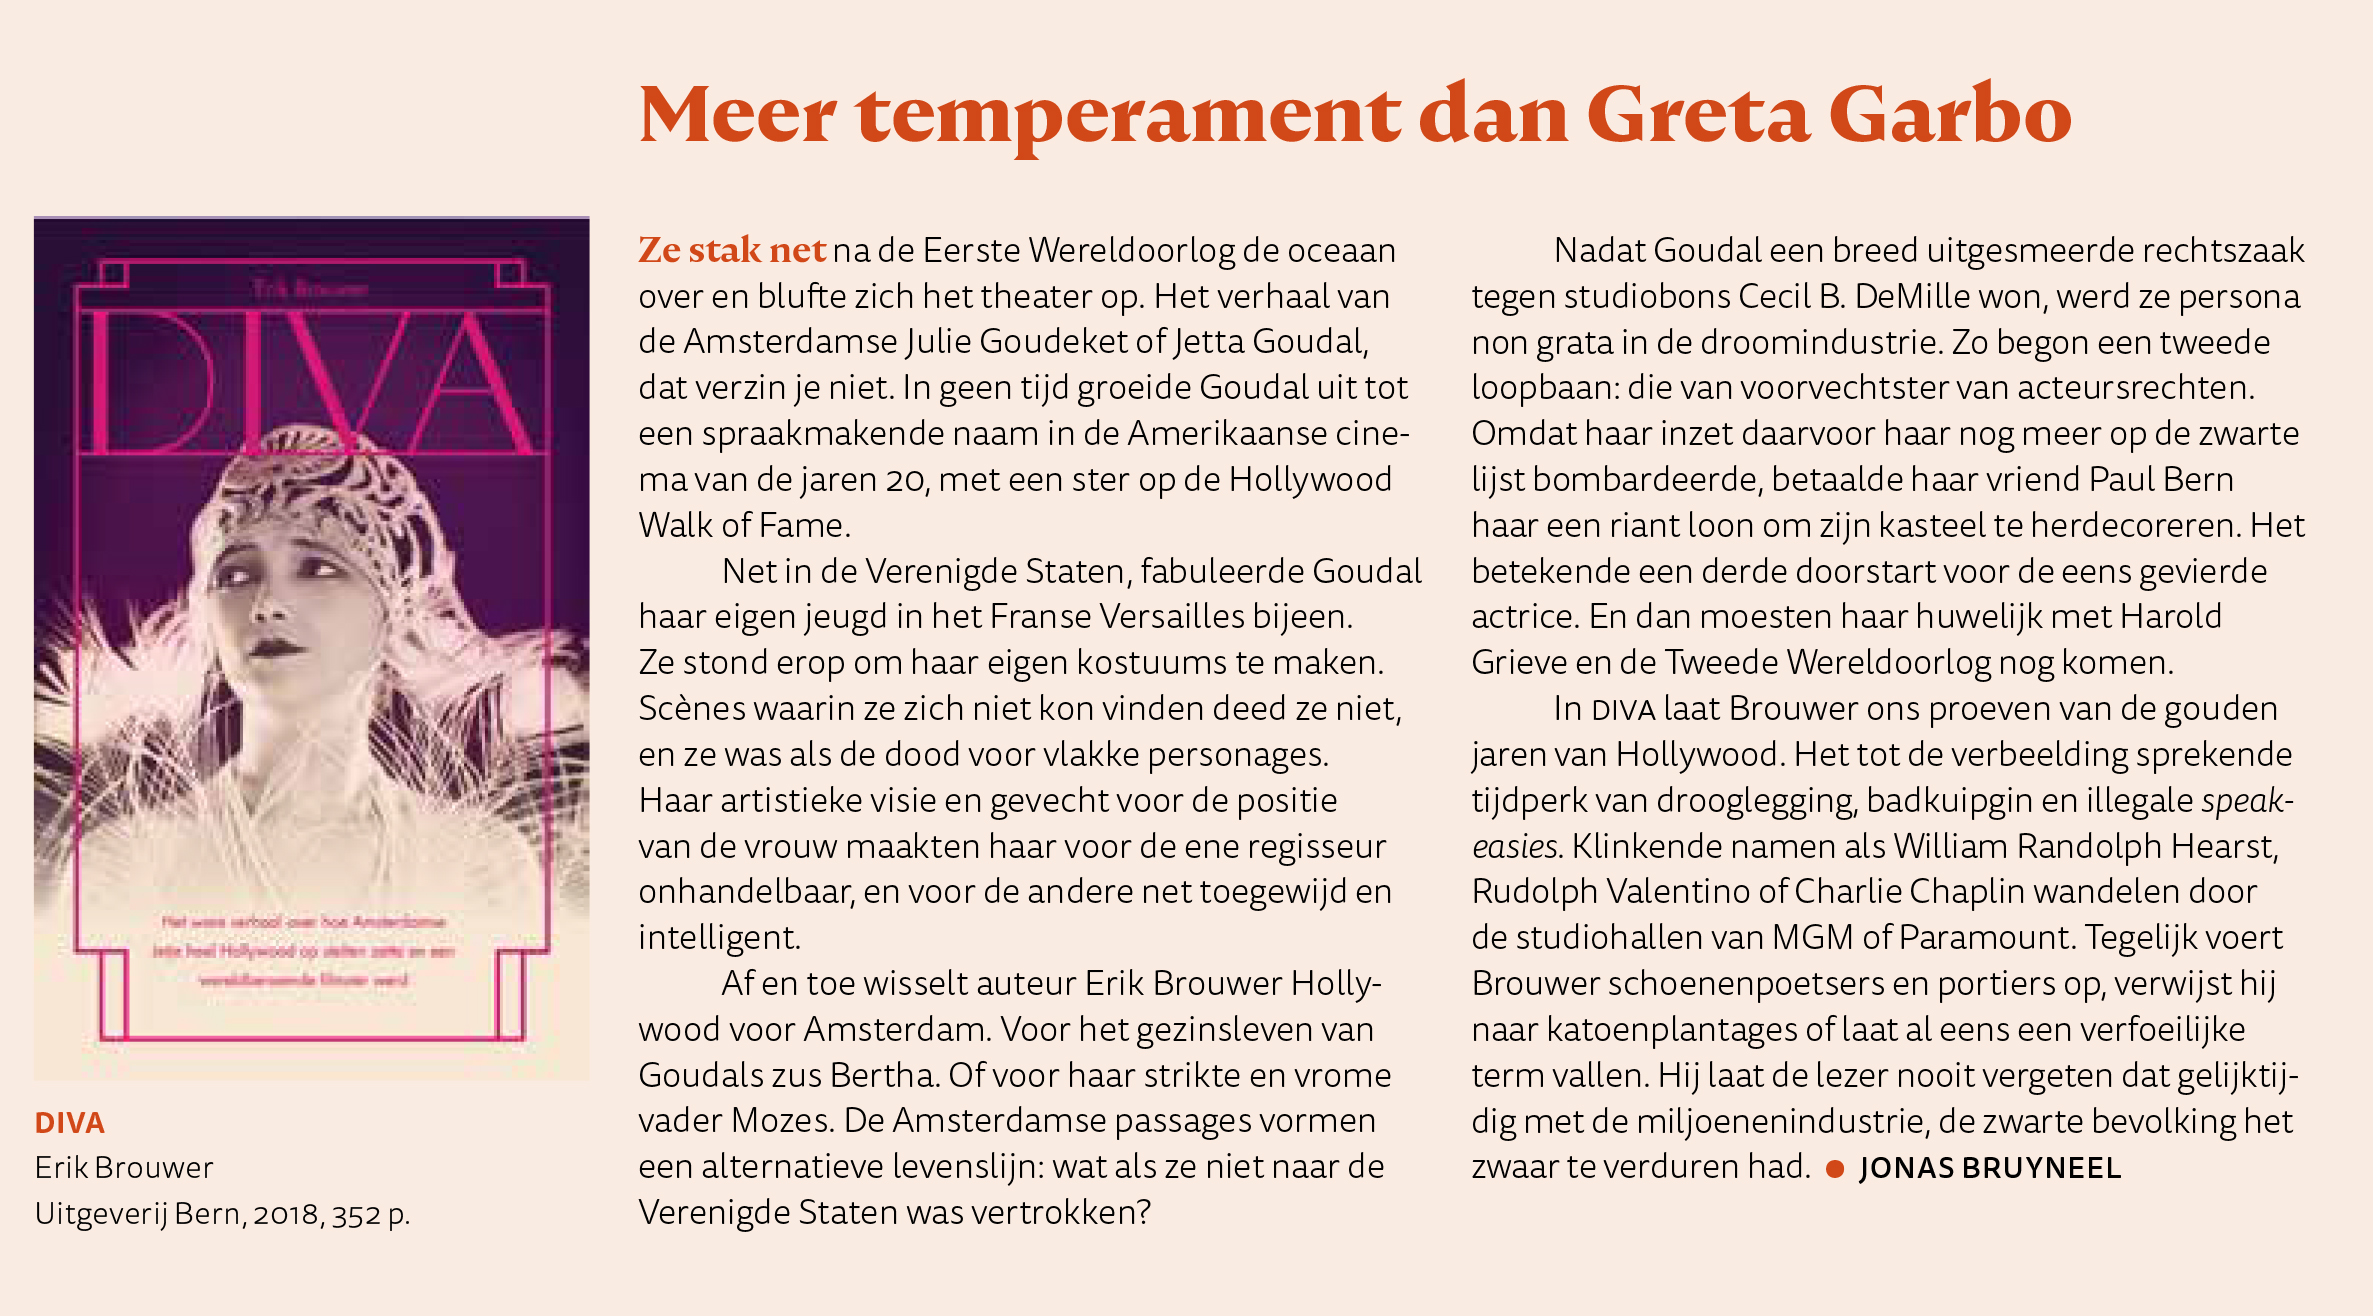 Erik Brouwer nieuw boek DIVA over Jetta Goudal in Belgische Filmmagie